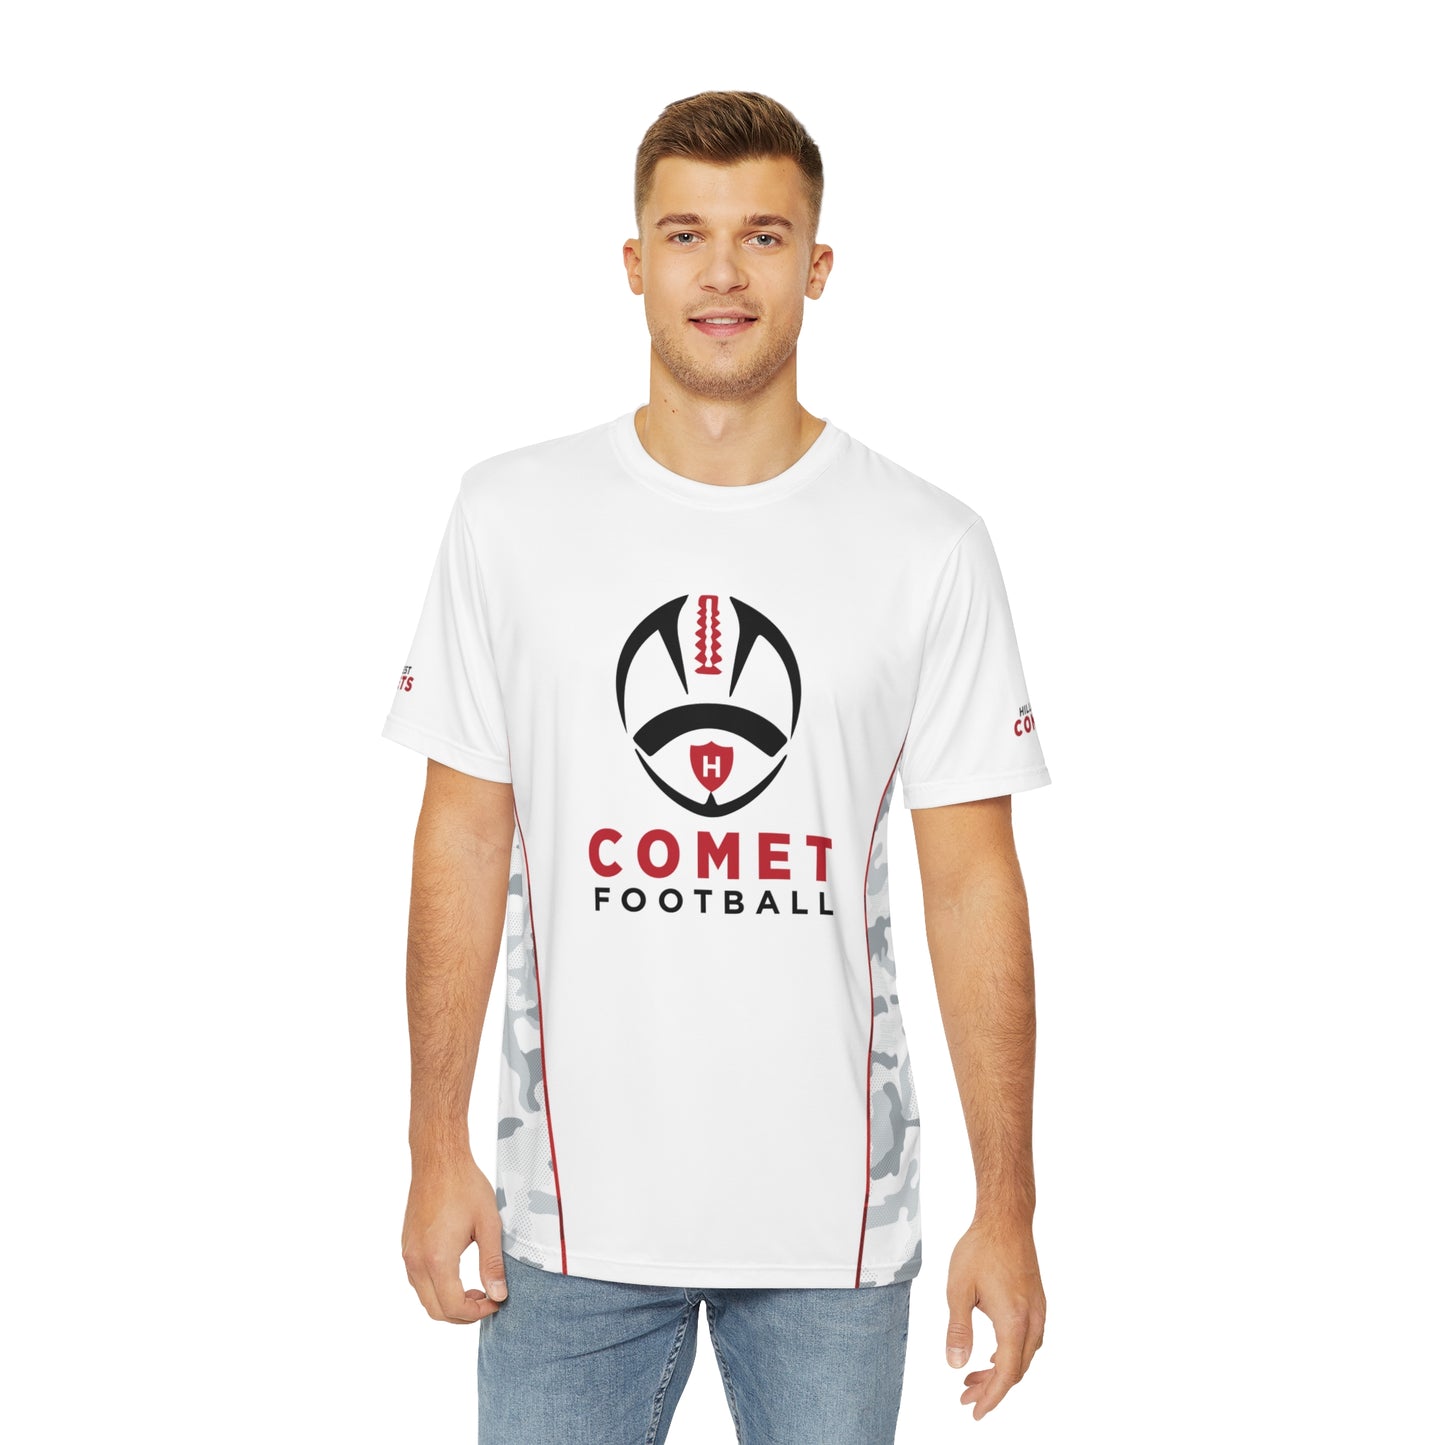 Comet Football - Men's Polyester Tee (AOP)